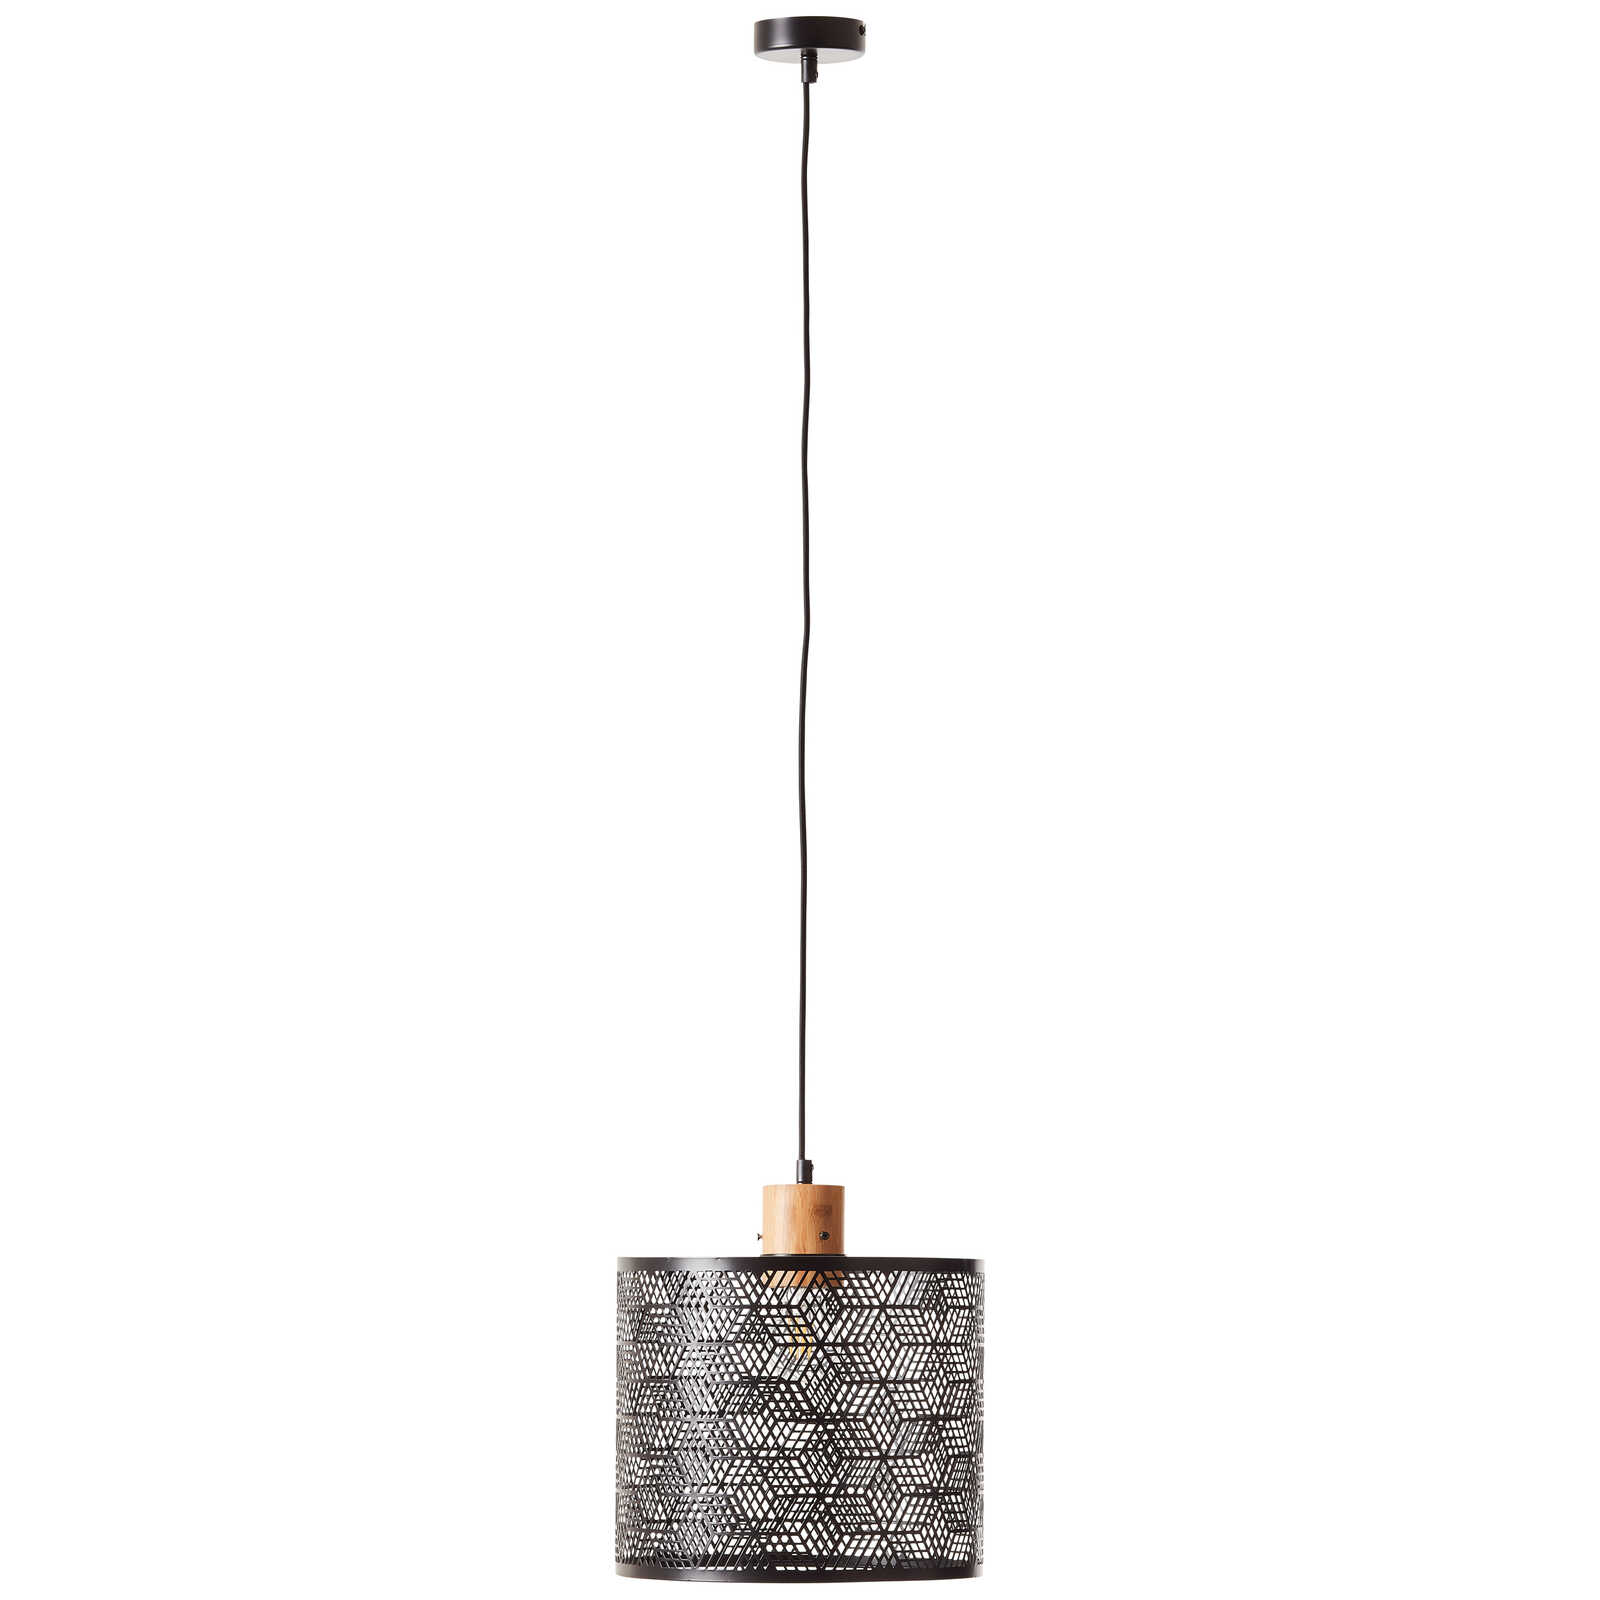             Metalen hanglamp - Moritz 1 - Bruin
        